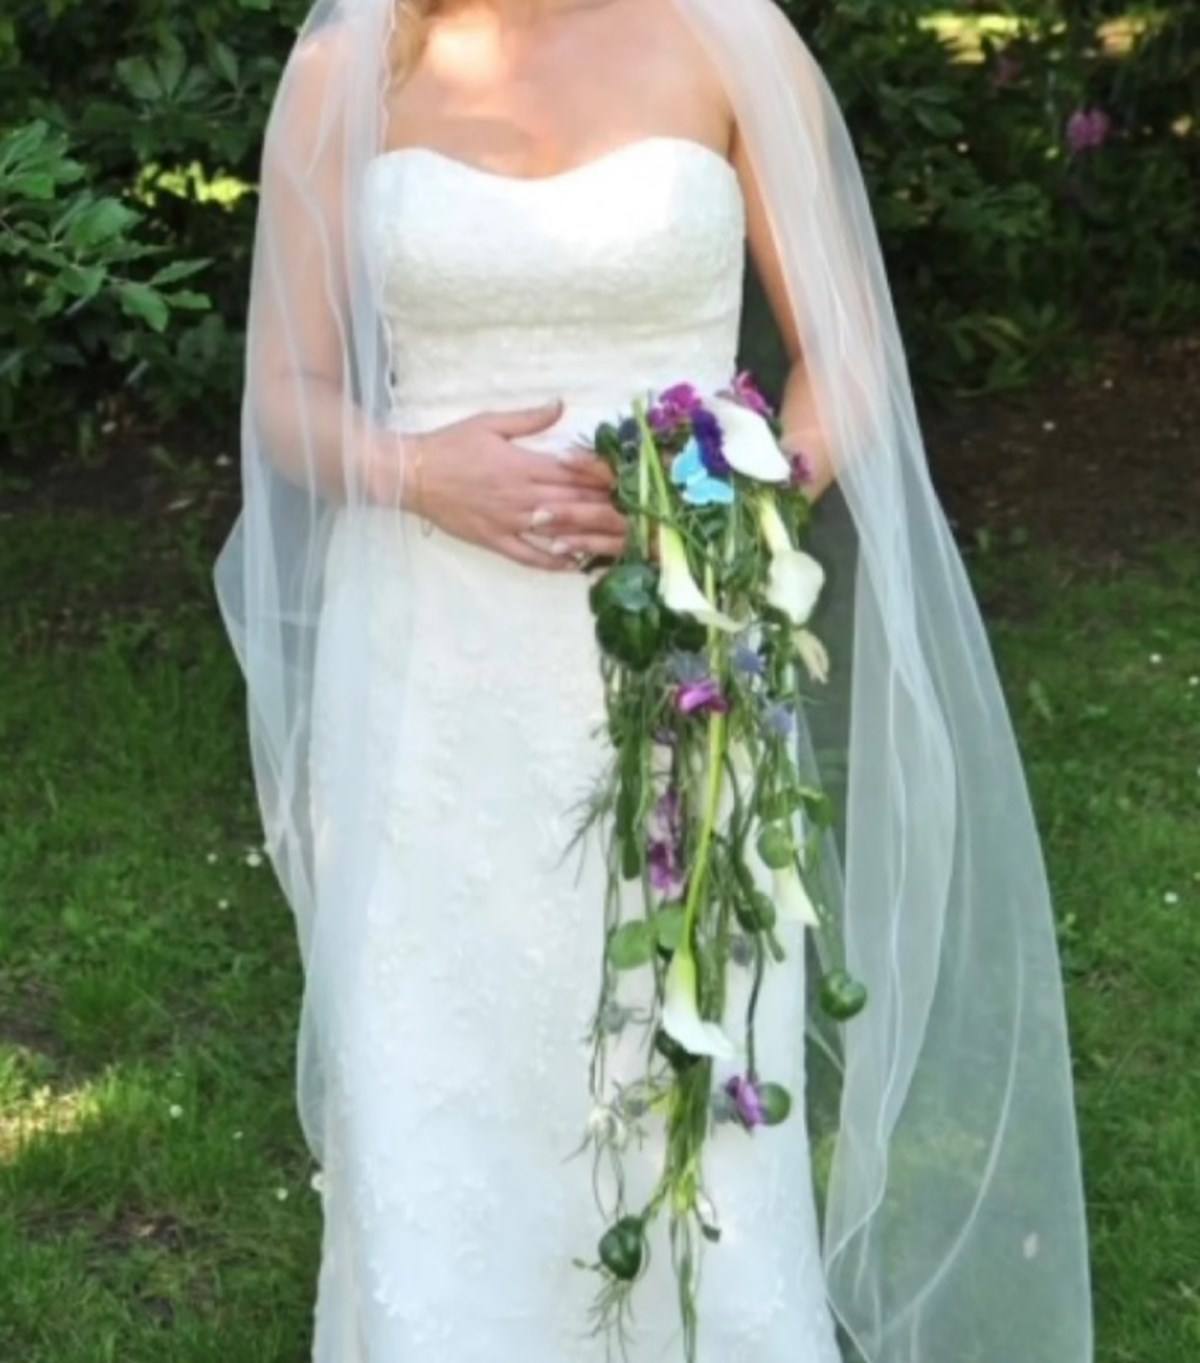 Jennifer fra Randers NV har denne brudekjole til salg på DBA for 1.000 kroner. Nyprisen var 9.000 kroner, skriver hun og oplyser også, at brudekjolen er størrelse 40-42, og at hun selv er 179 centimeter høj.